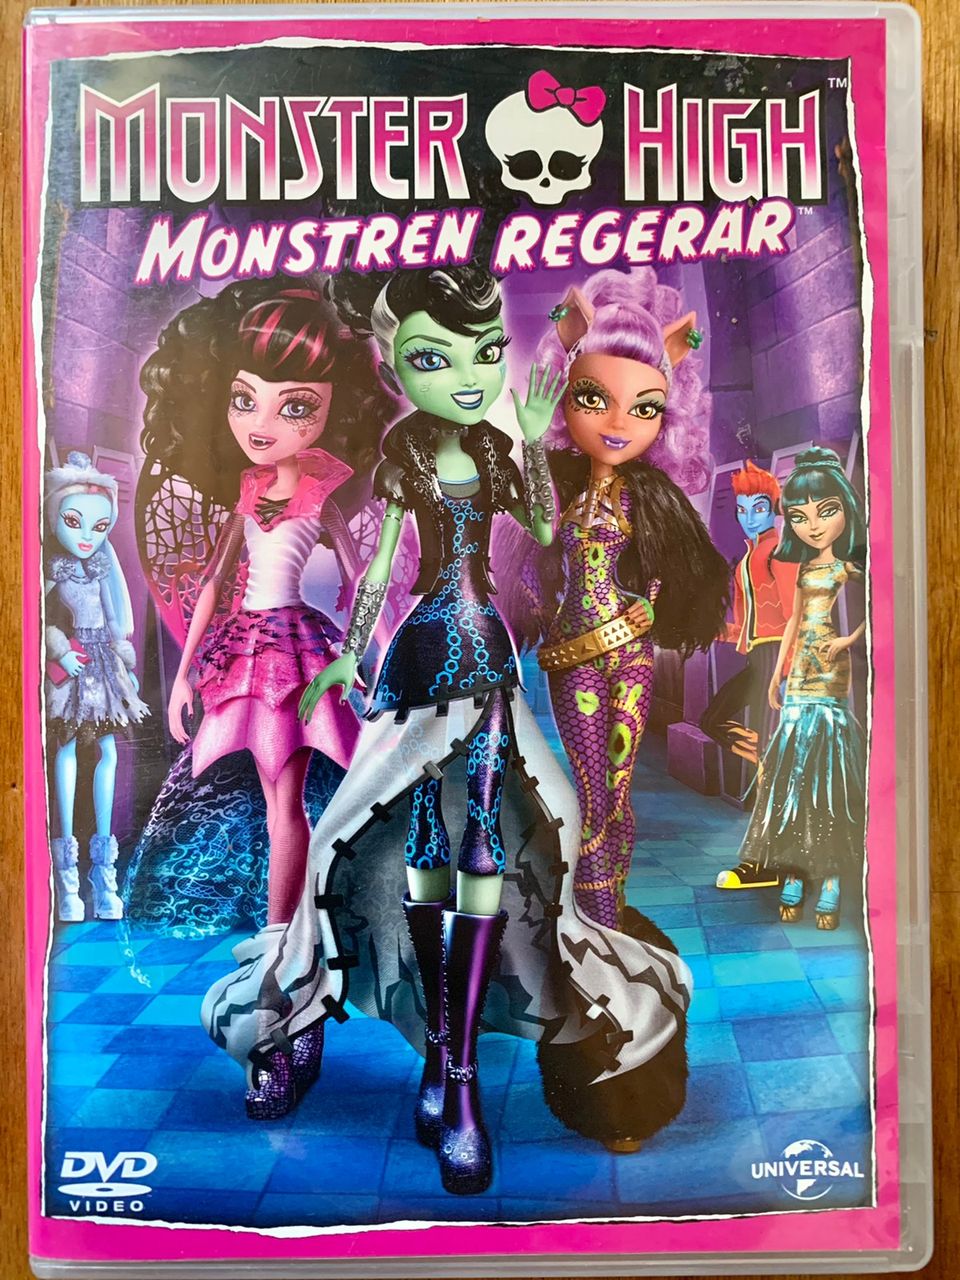 Monster High Monstren regerar DVD